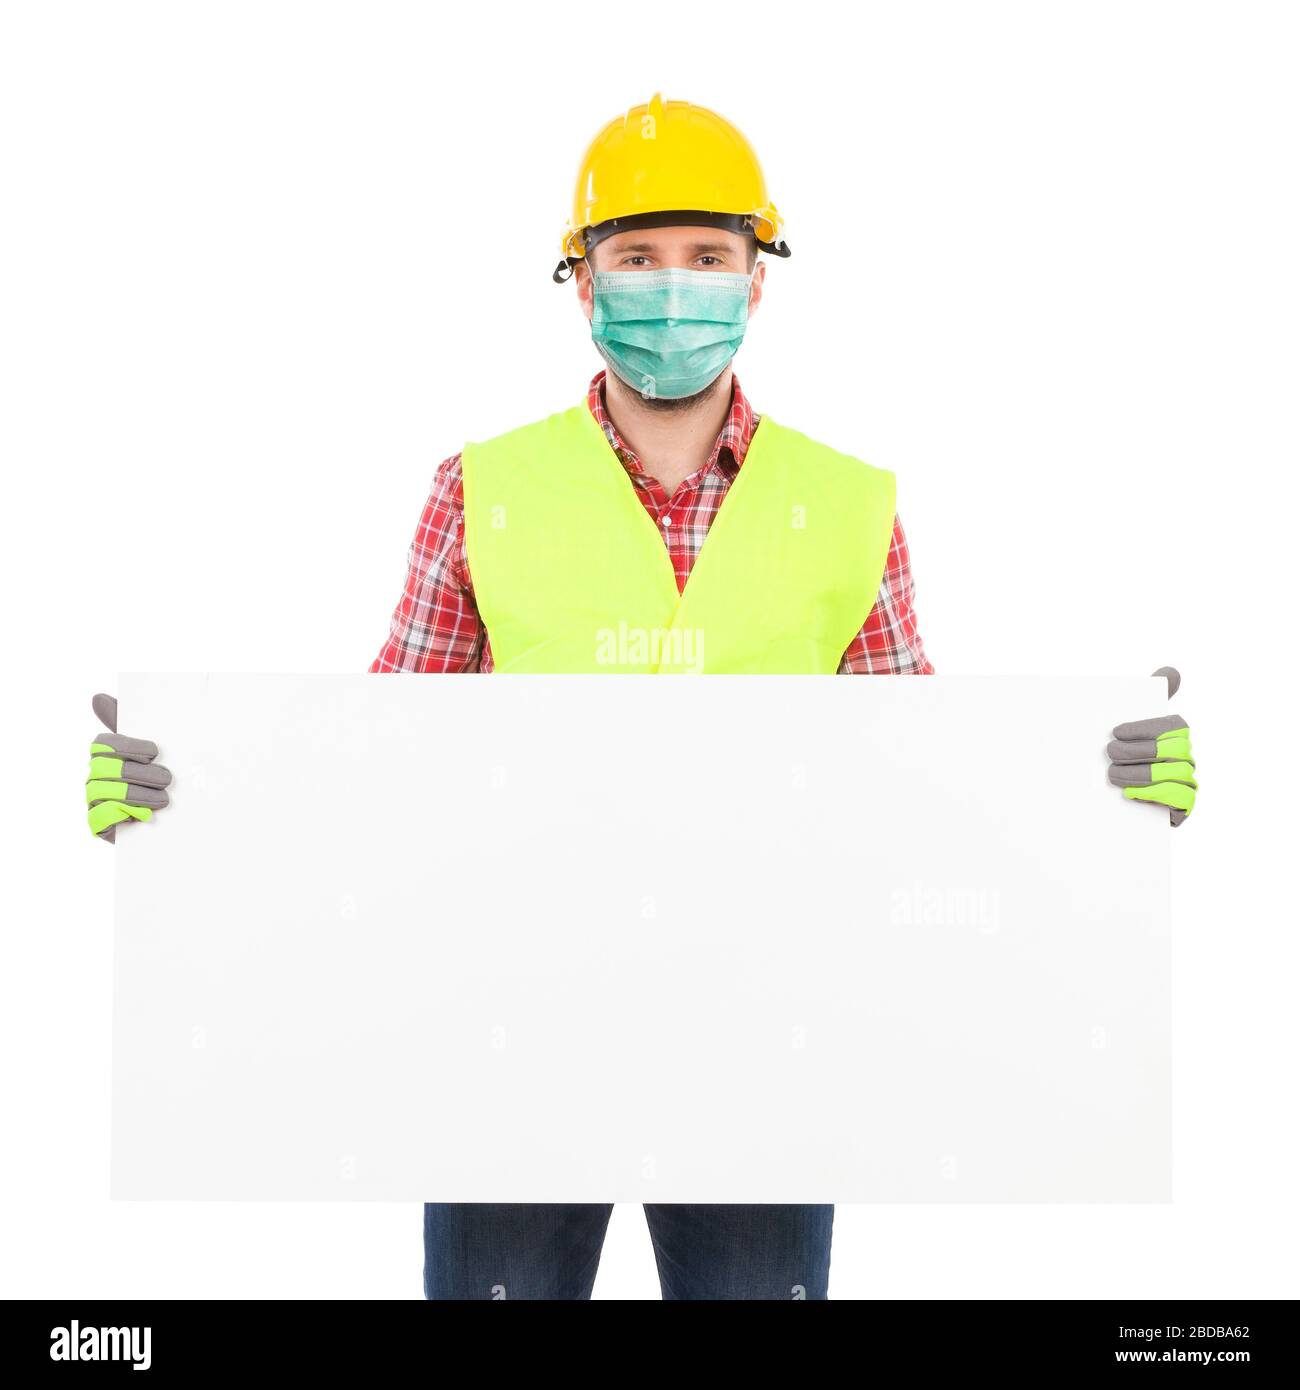 Handarbeiter mit Sicherheitsmaske, gelbem Helm und reflektierender Weste halten weißes Schild. Studio mit drei Viertel Länge wurde isoliert aufgenommen Stockfoto